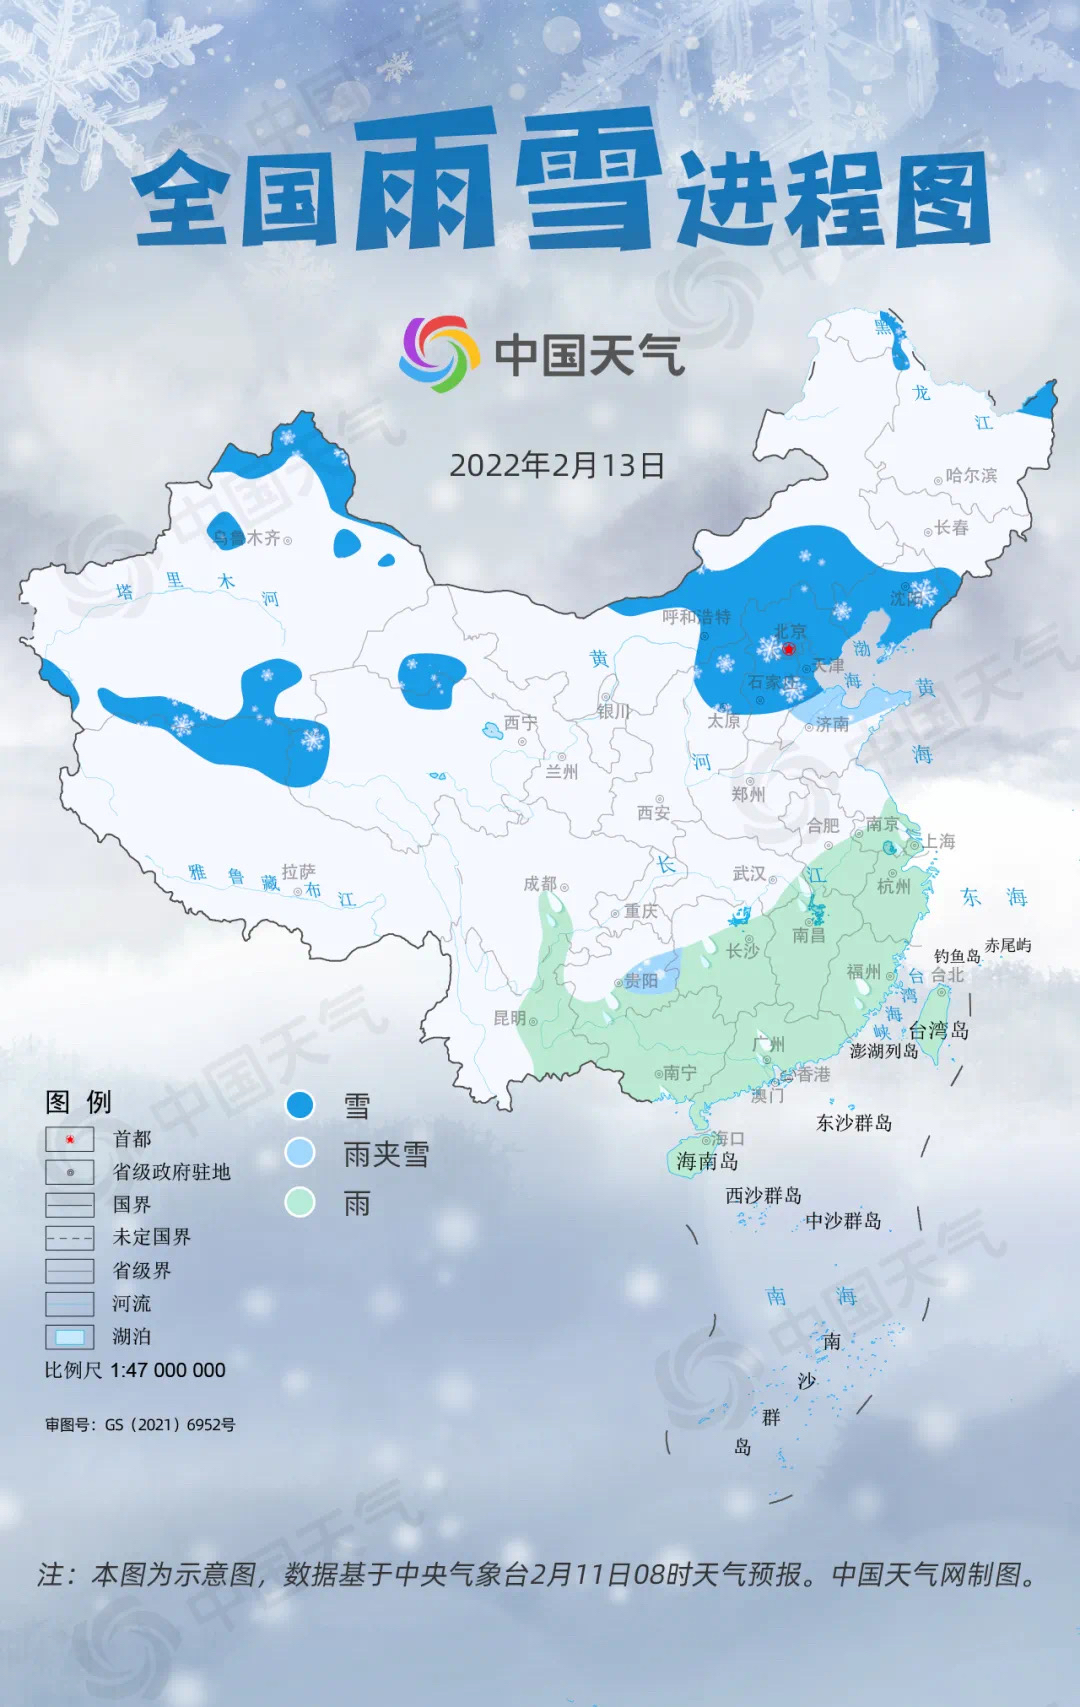 雨雪 降温!济南周末冷空气来袭 来看最新降雪进程预测